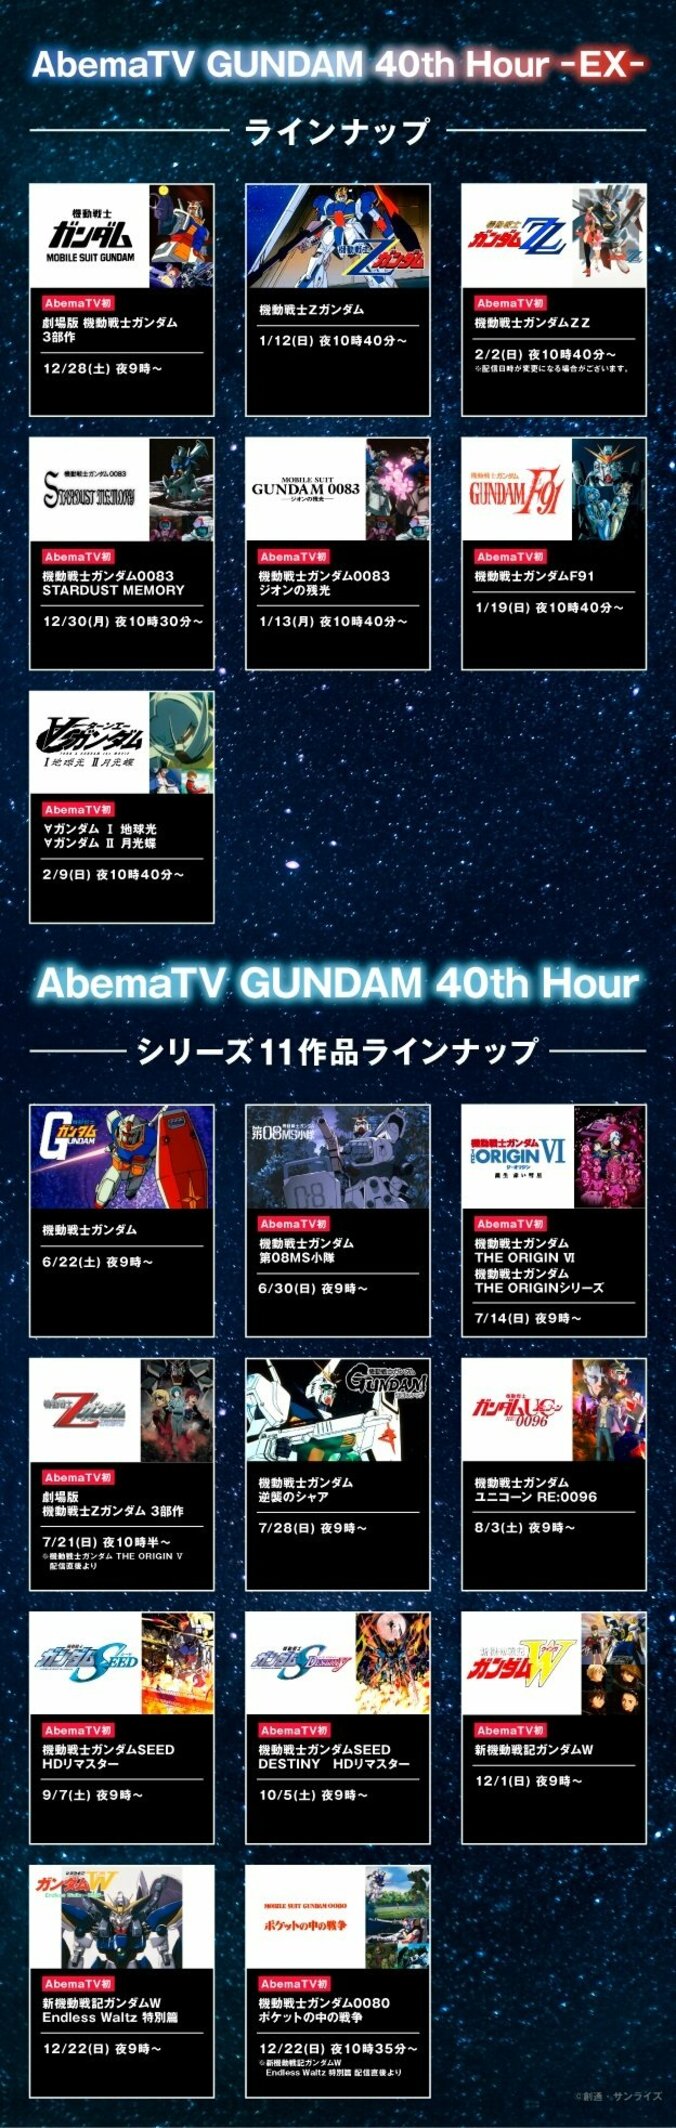 『AbemaTV GUNDAM 40th Hour』のラインナップ特別版が発表 28日から初配信作品が多数 2枚目